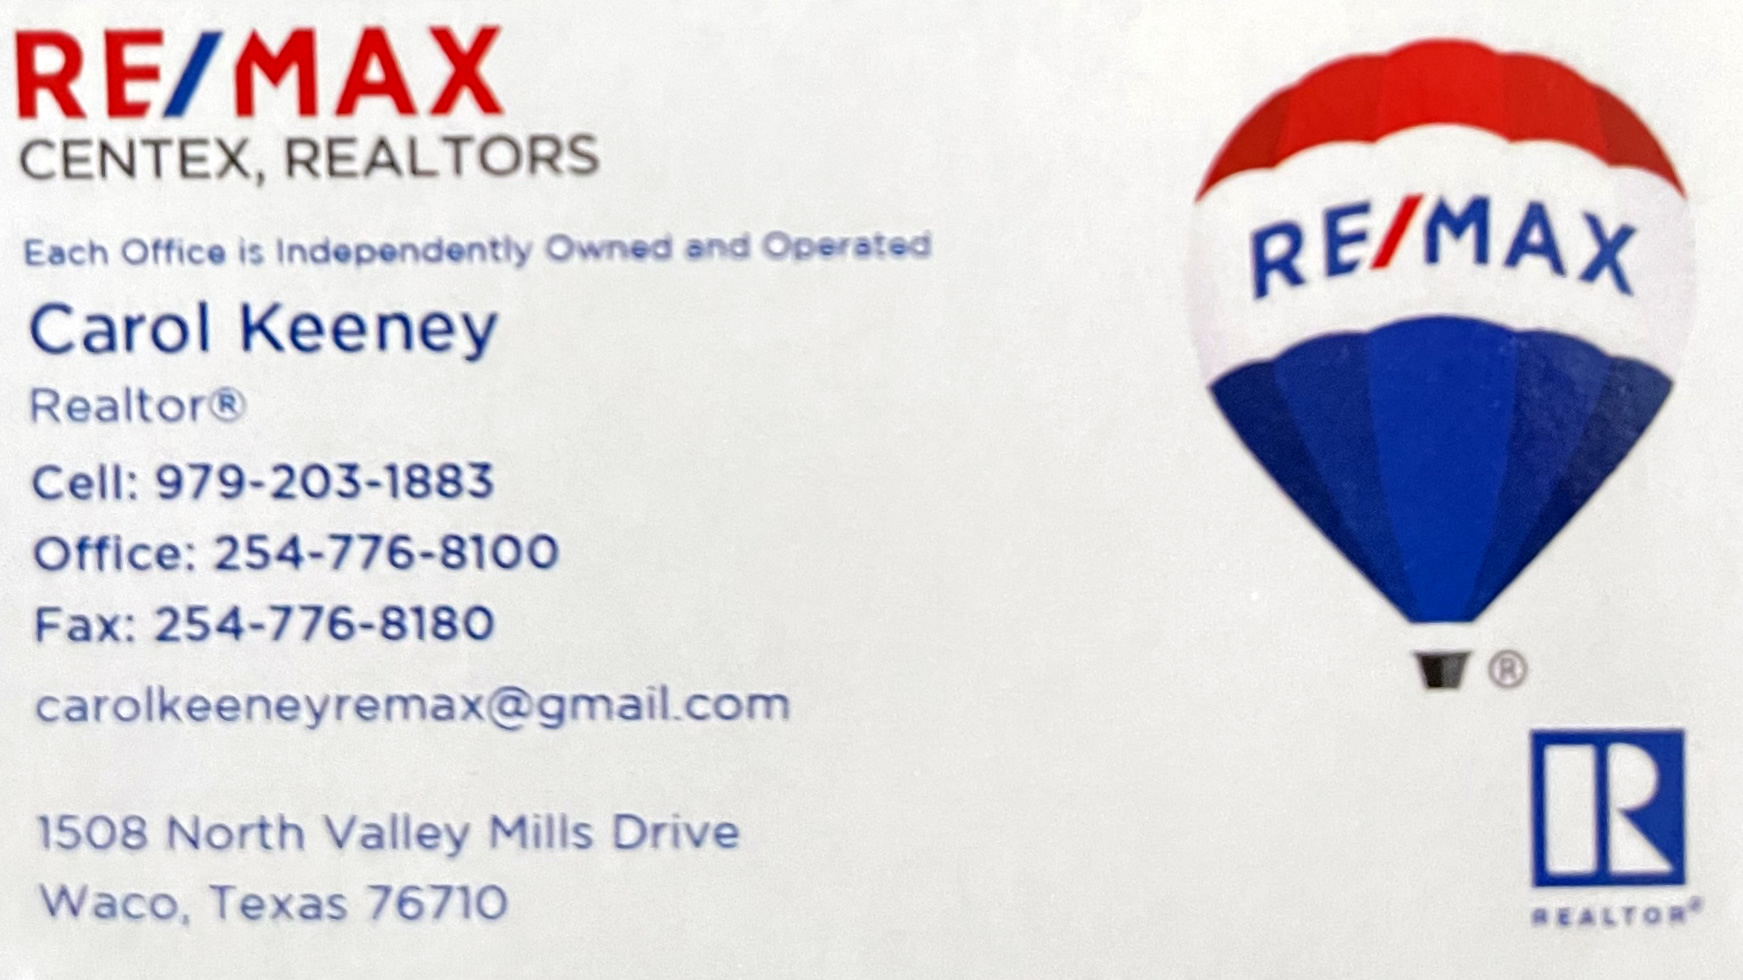 ReMax CenTex Realtors Waco Texas Carol Keeney